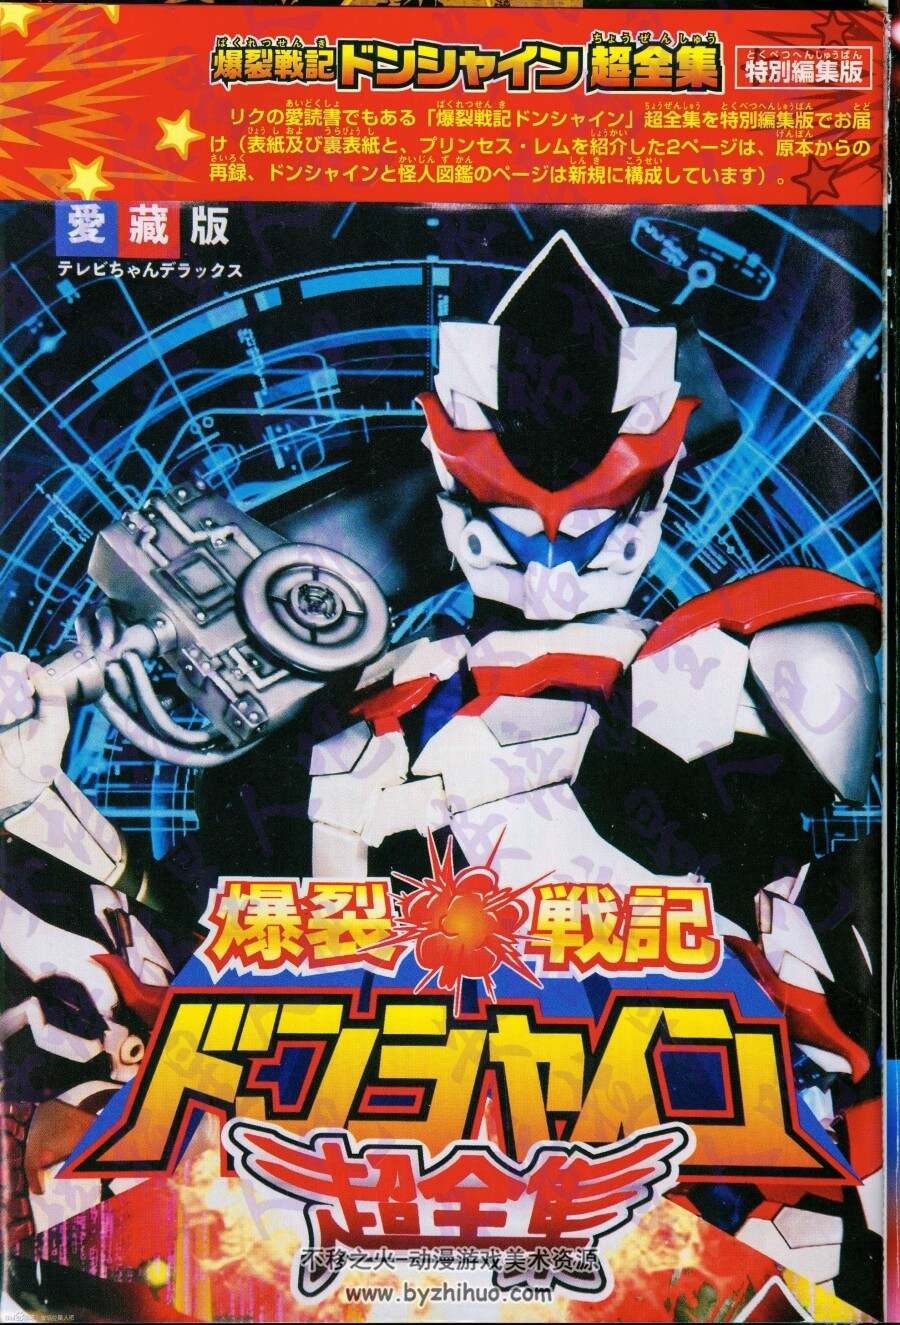 捷德奥特曼超全集 Ultraman Geed Chozenshu 百度网盘下载 364MB